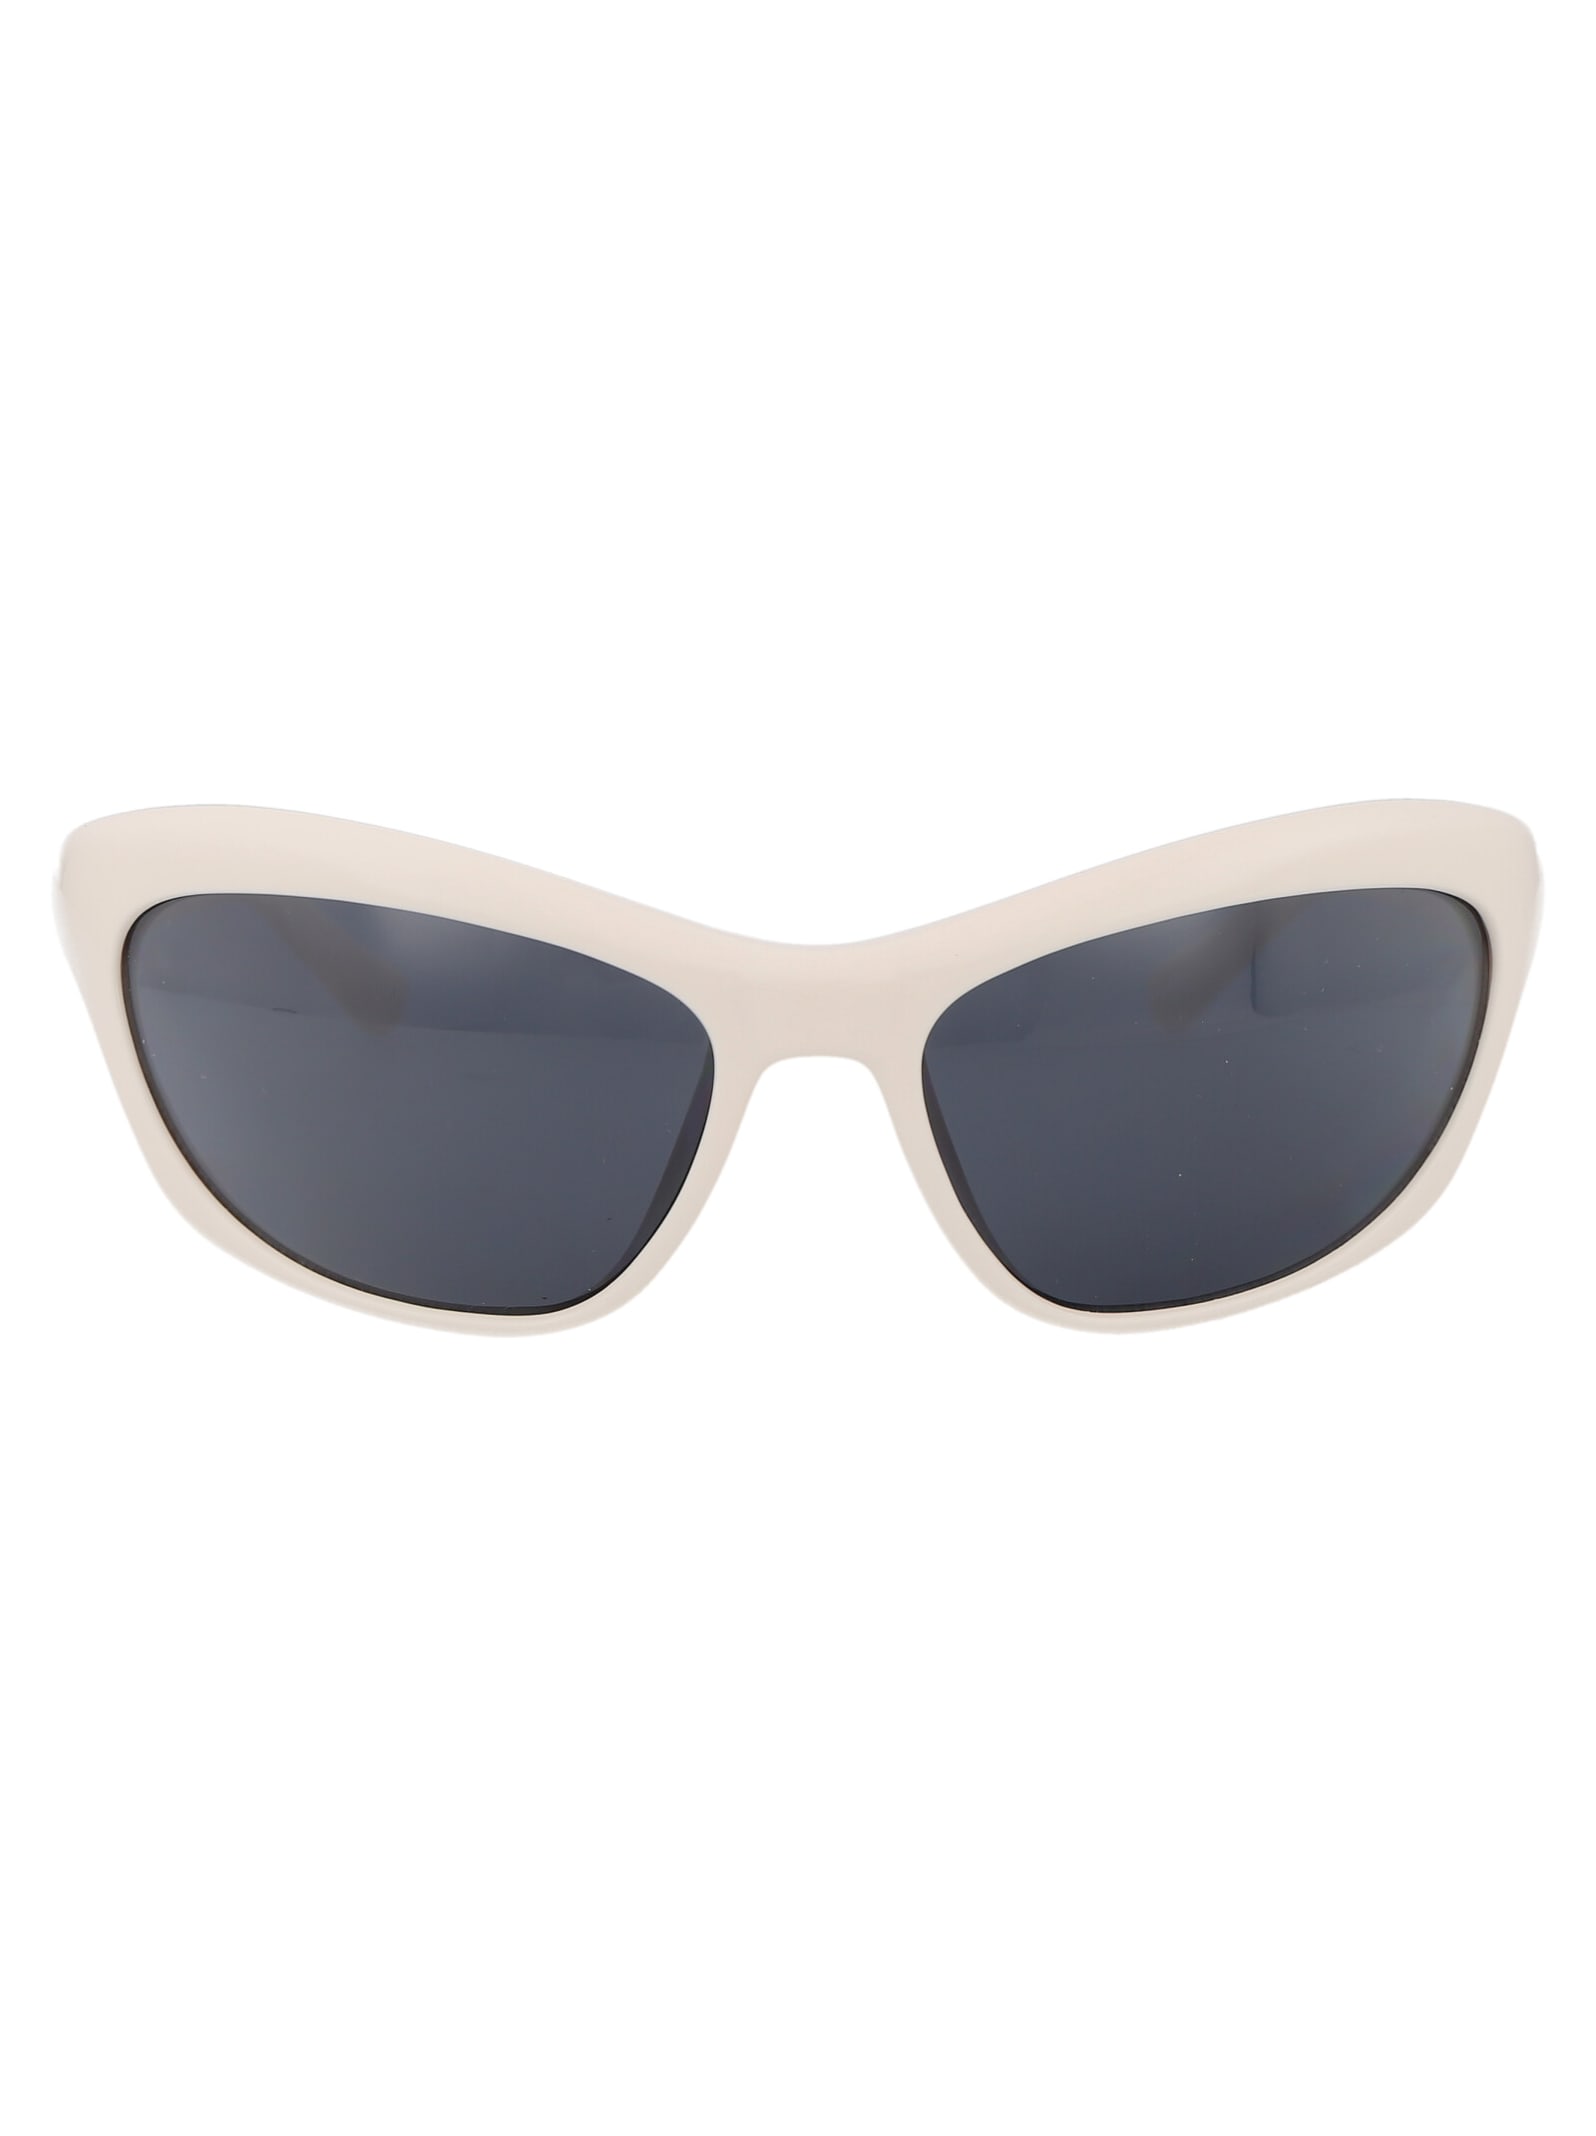 Cf 7030/s Sunglasses